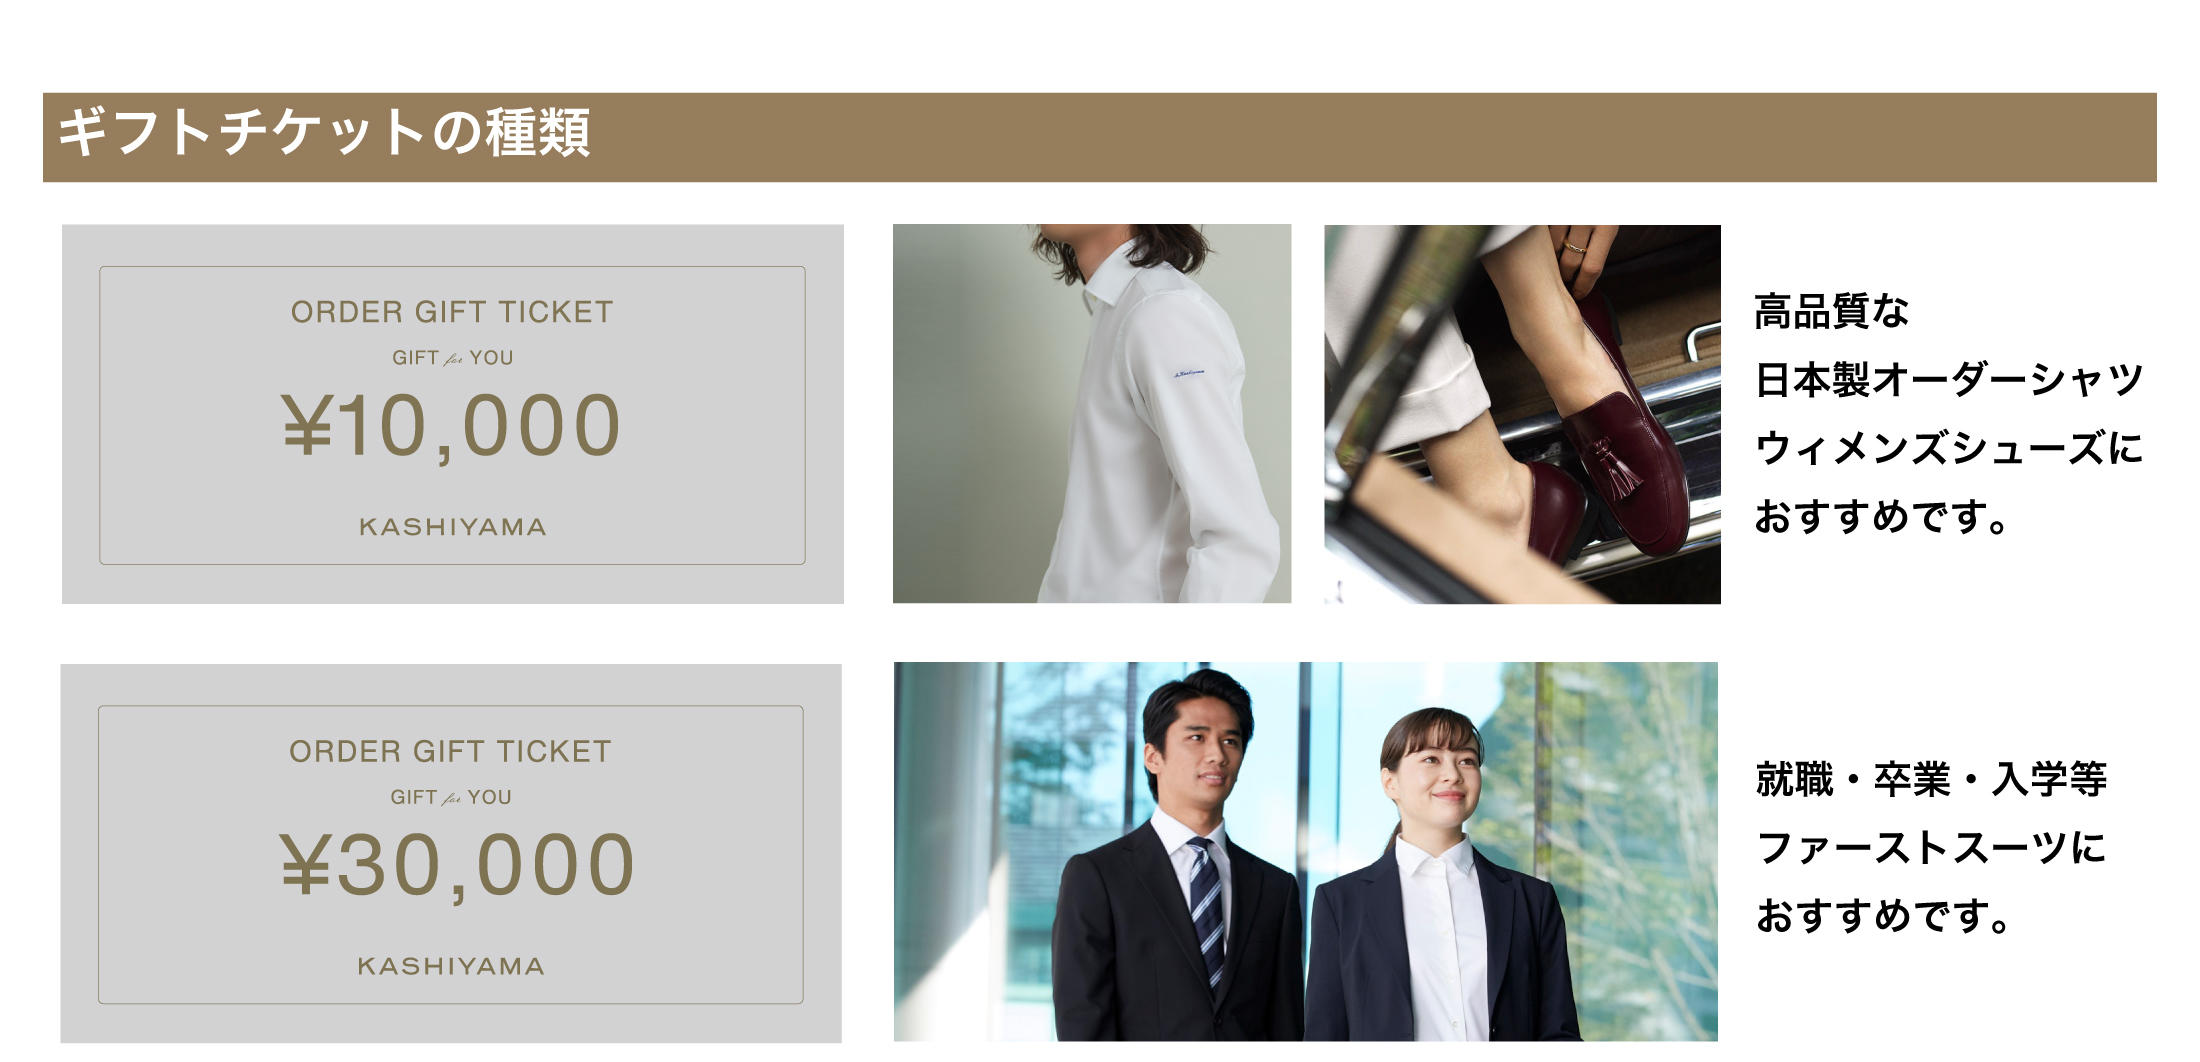 THE SUIT COMPANY スーツ一式&シャツプレゼント券 金券 - 優待券/割引券